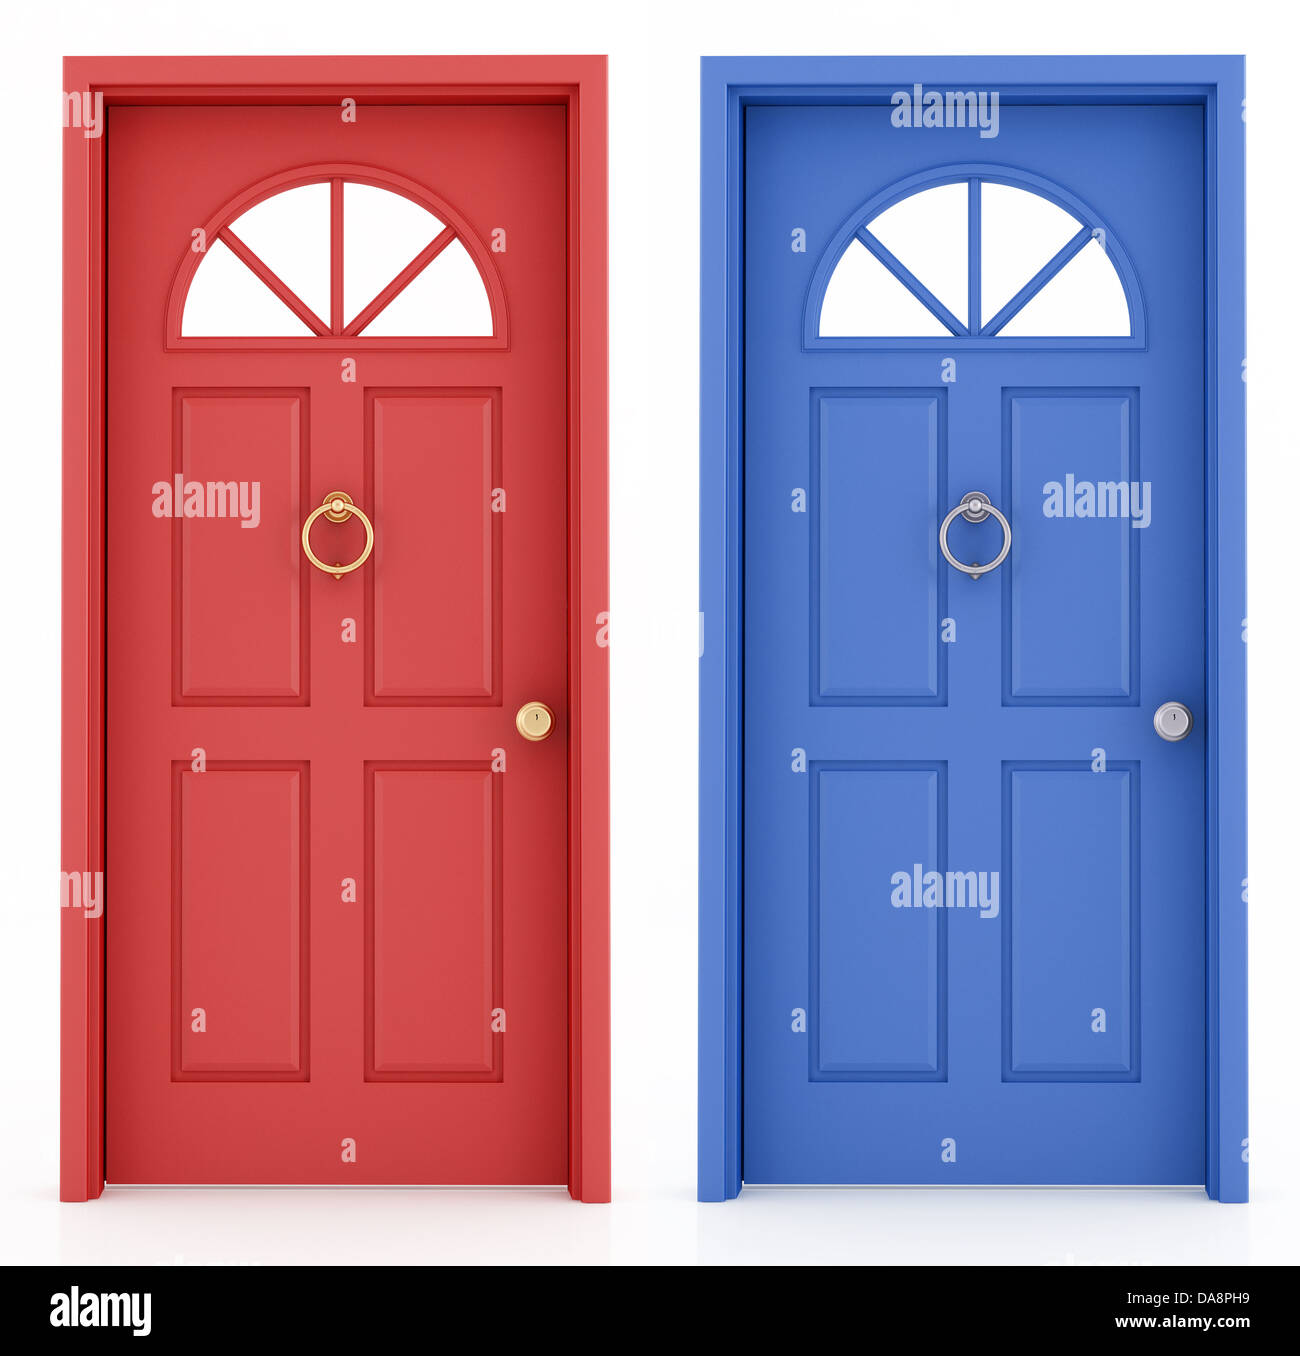 Le rouge et le bleu de la porte d'entrée élégante isolé sur blanc - rendering Banque D'Images